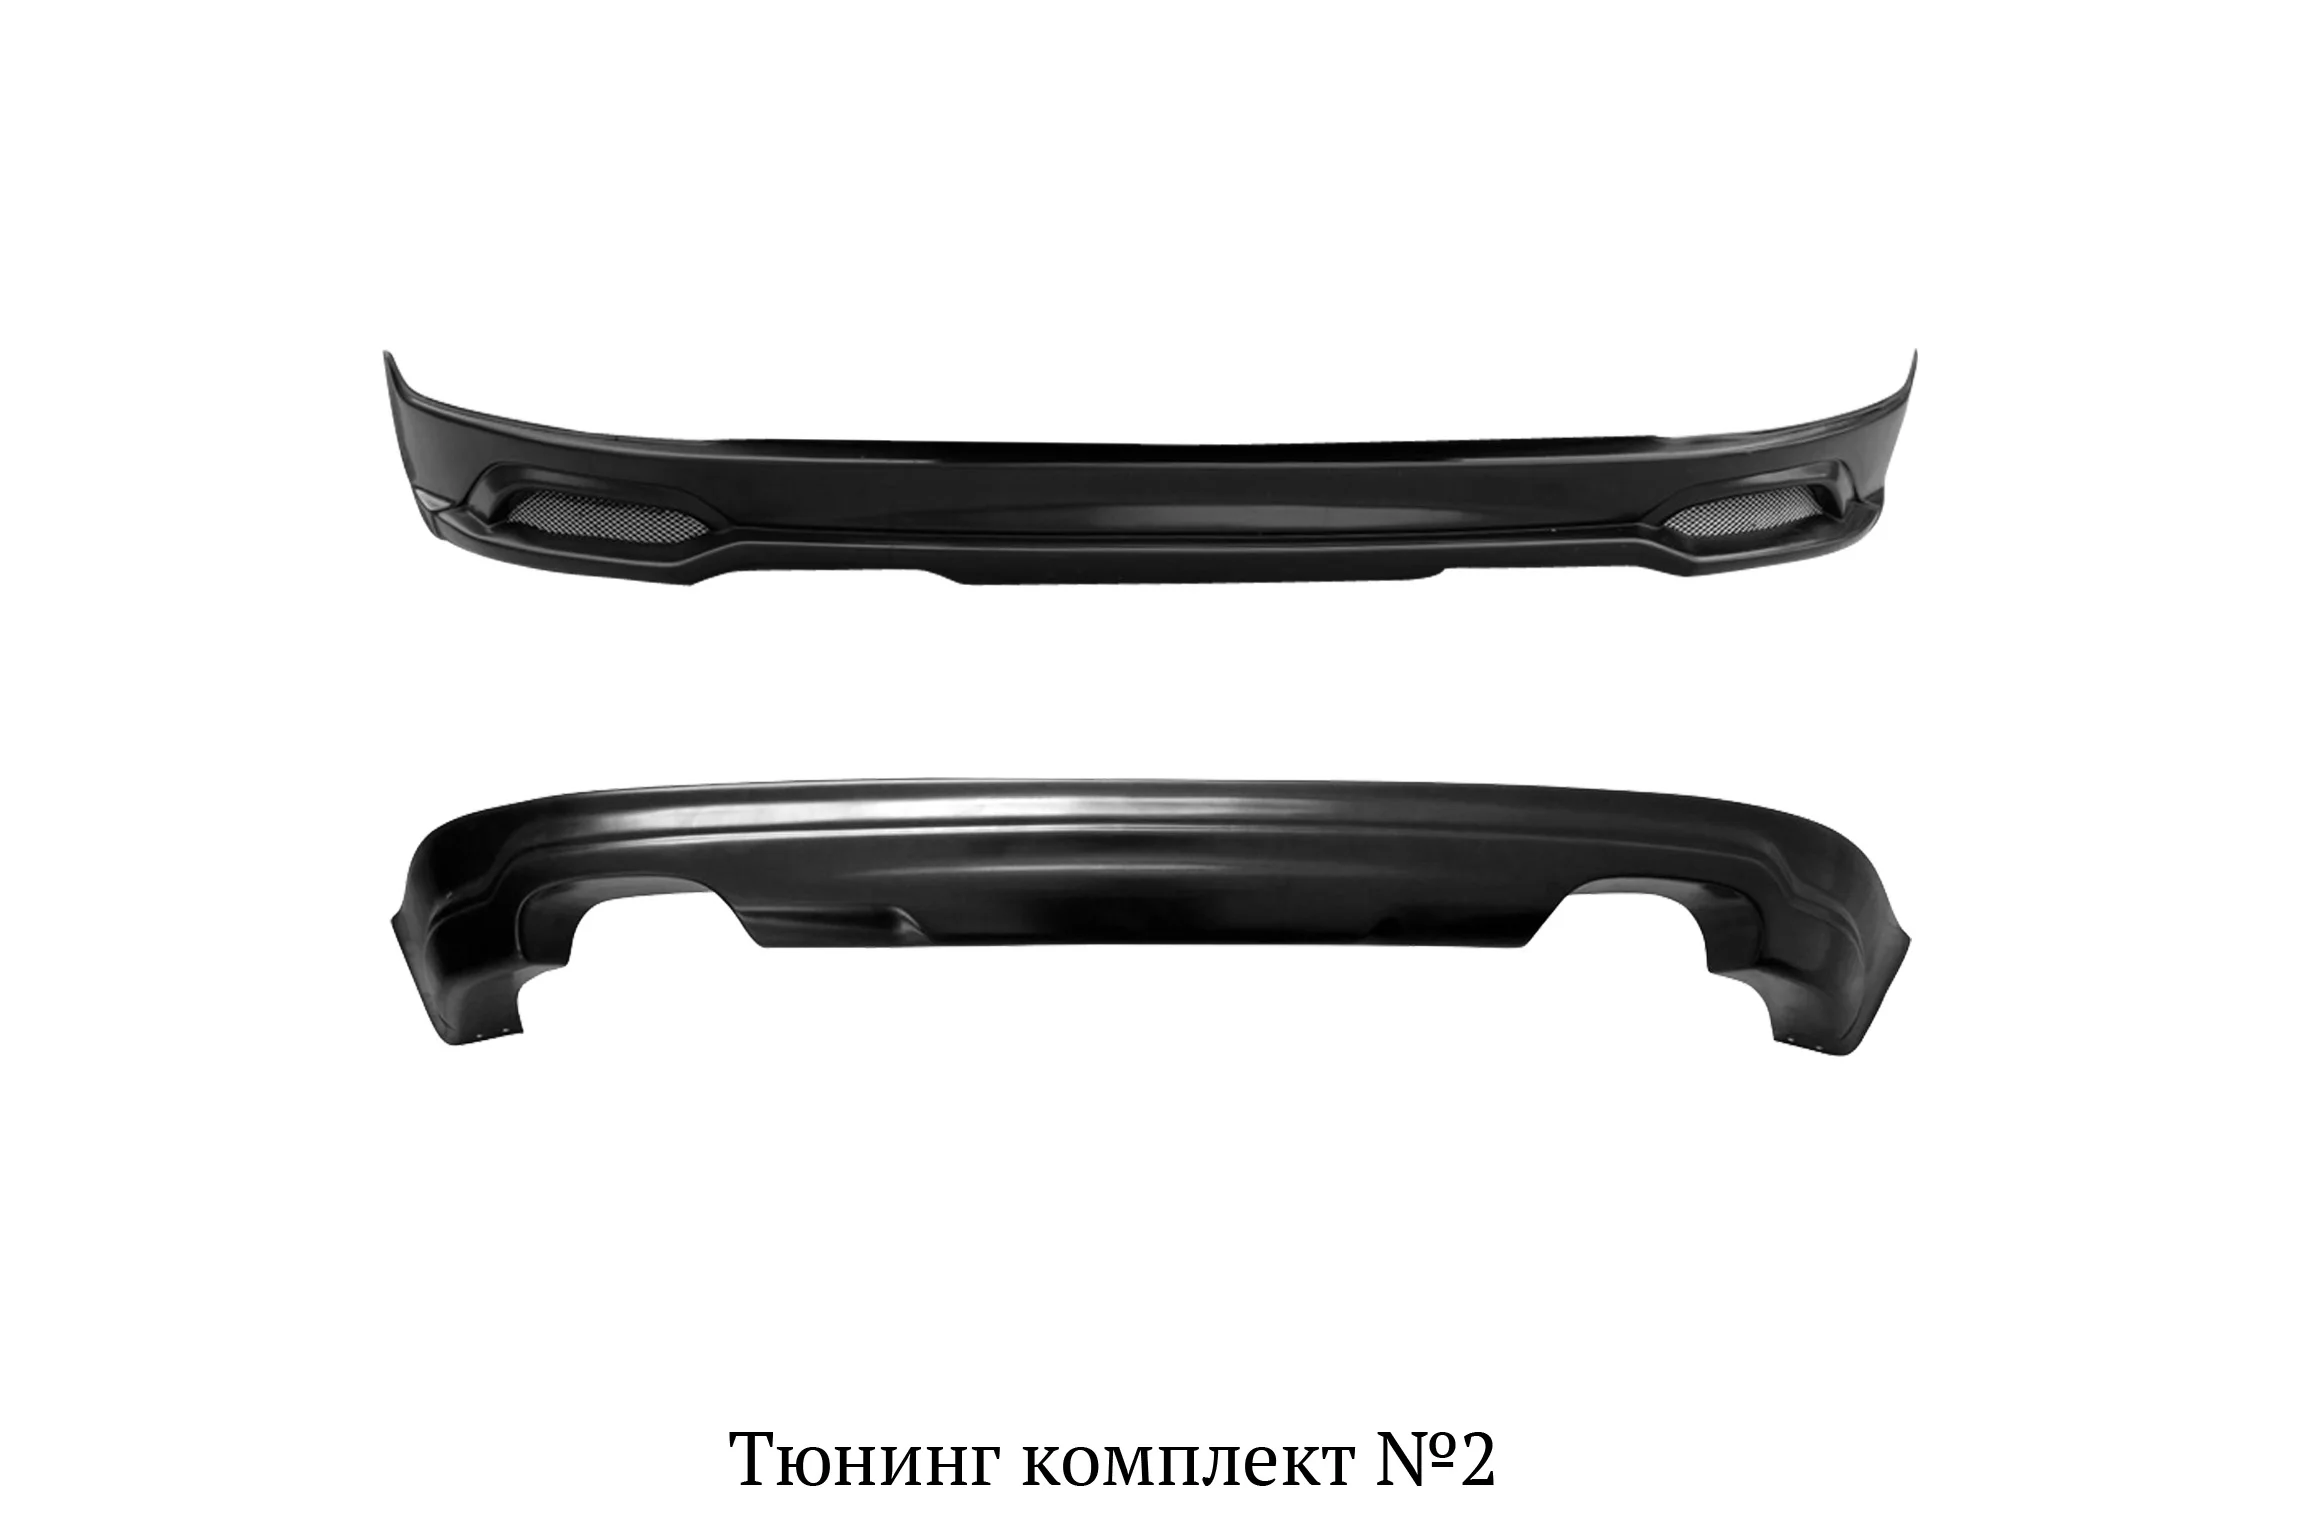 Тюнинг комплект №2 (тюнинг обвес переднего и заднего бампера) для Kia Sportage 2010-2013